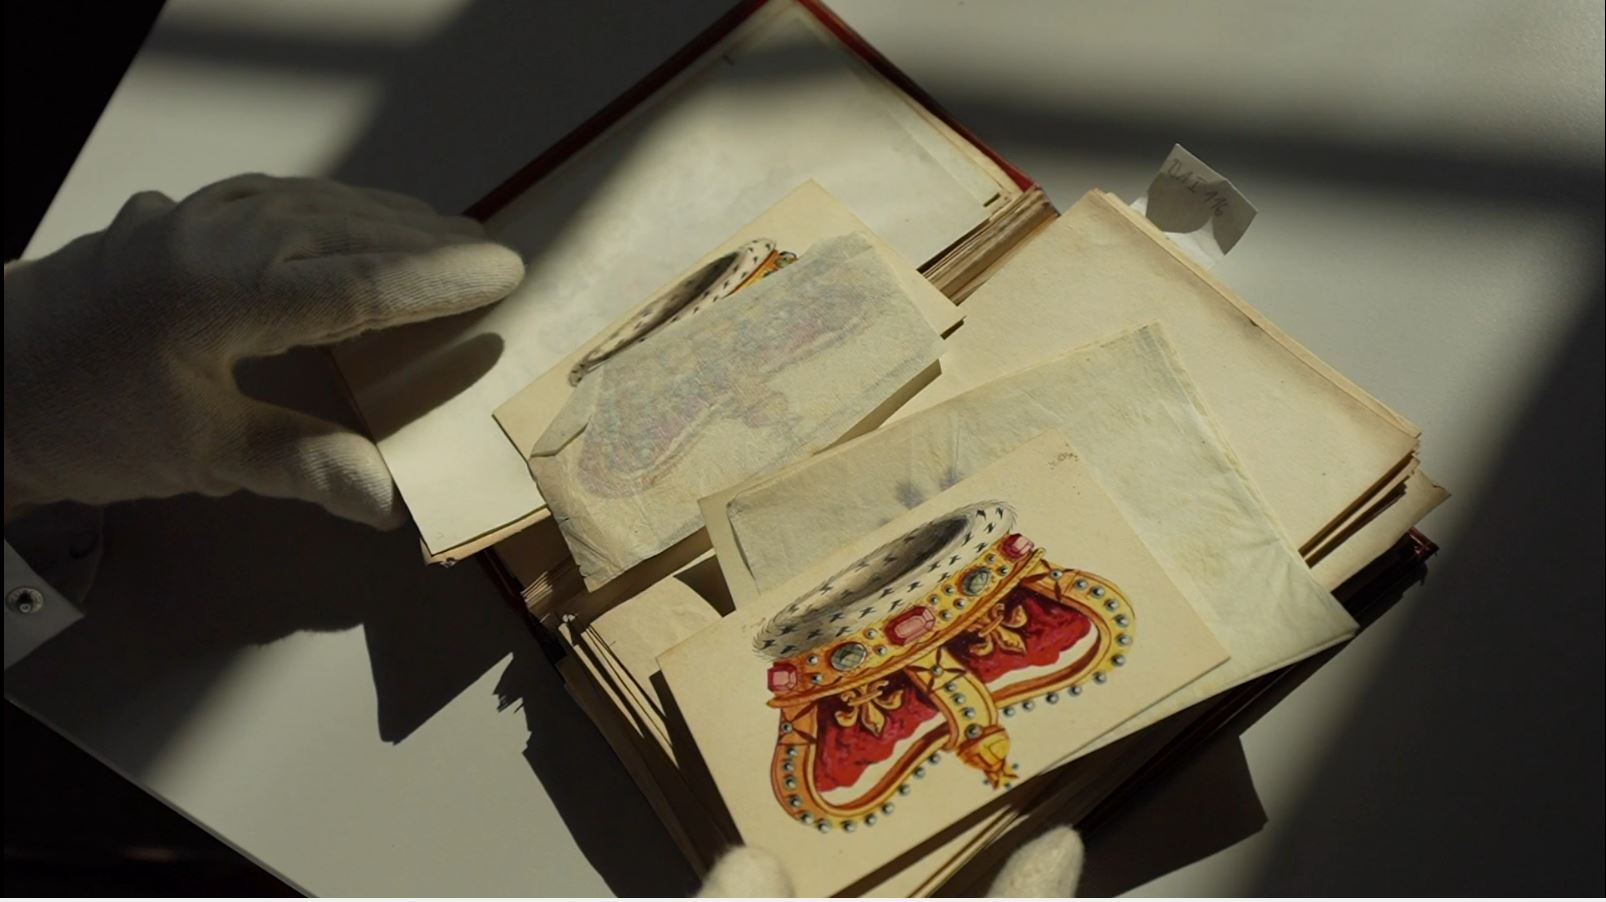 Das Bild zeigt eine Sammlung loser Blätter mit Zeichnungen in einer Mappe und die behandschuhten Hände einer untersuchenden Person.